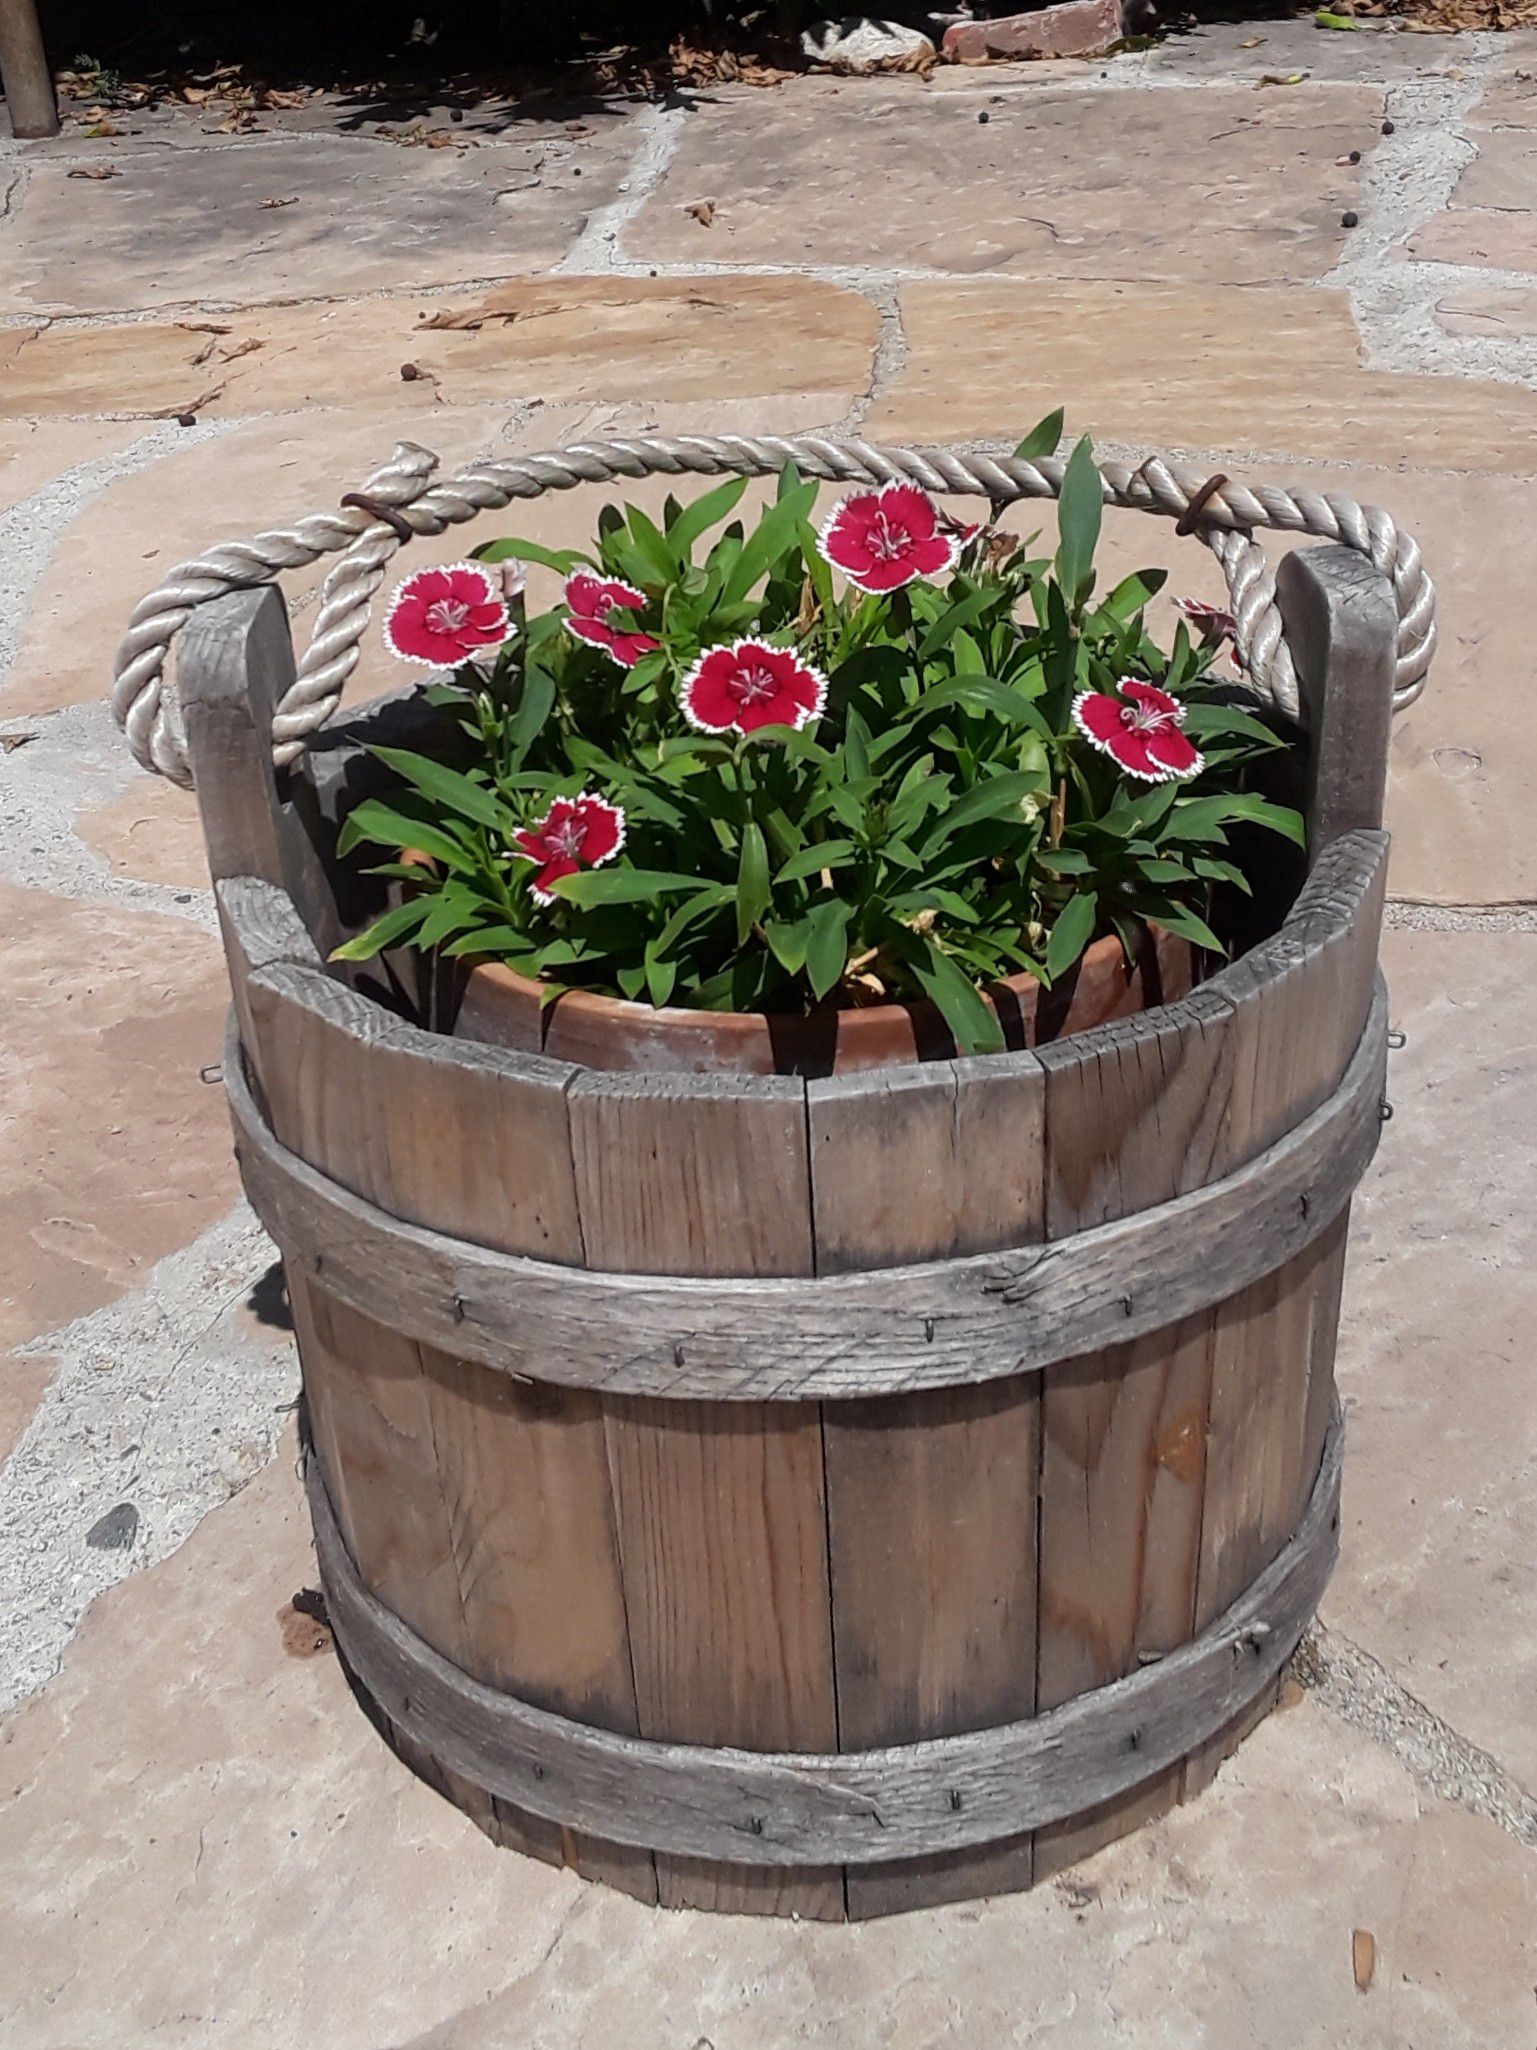 Flowers in a bucket